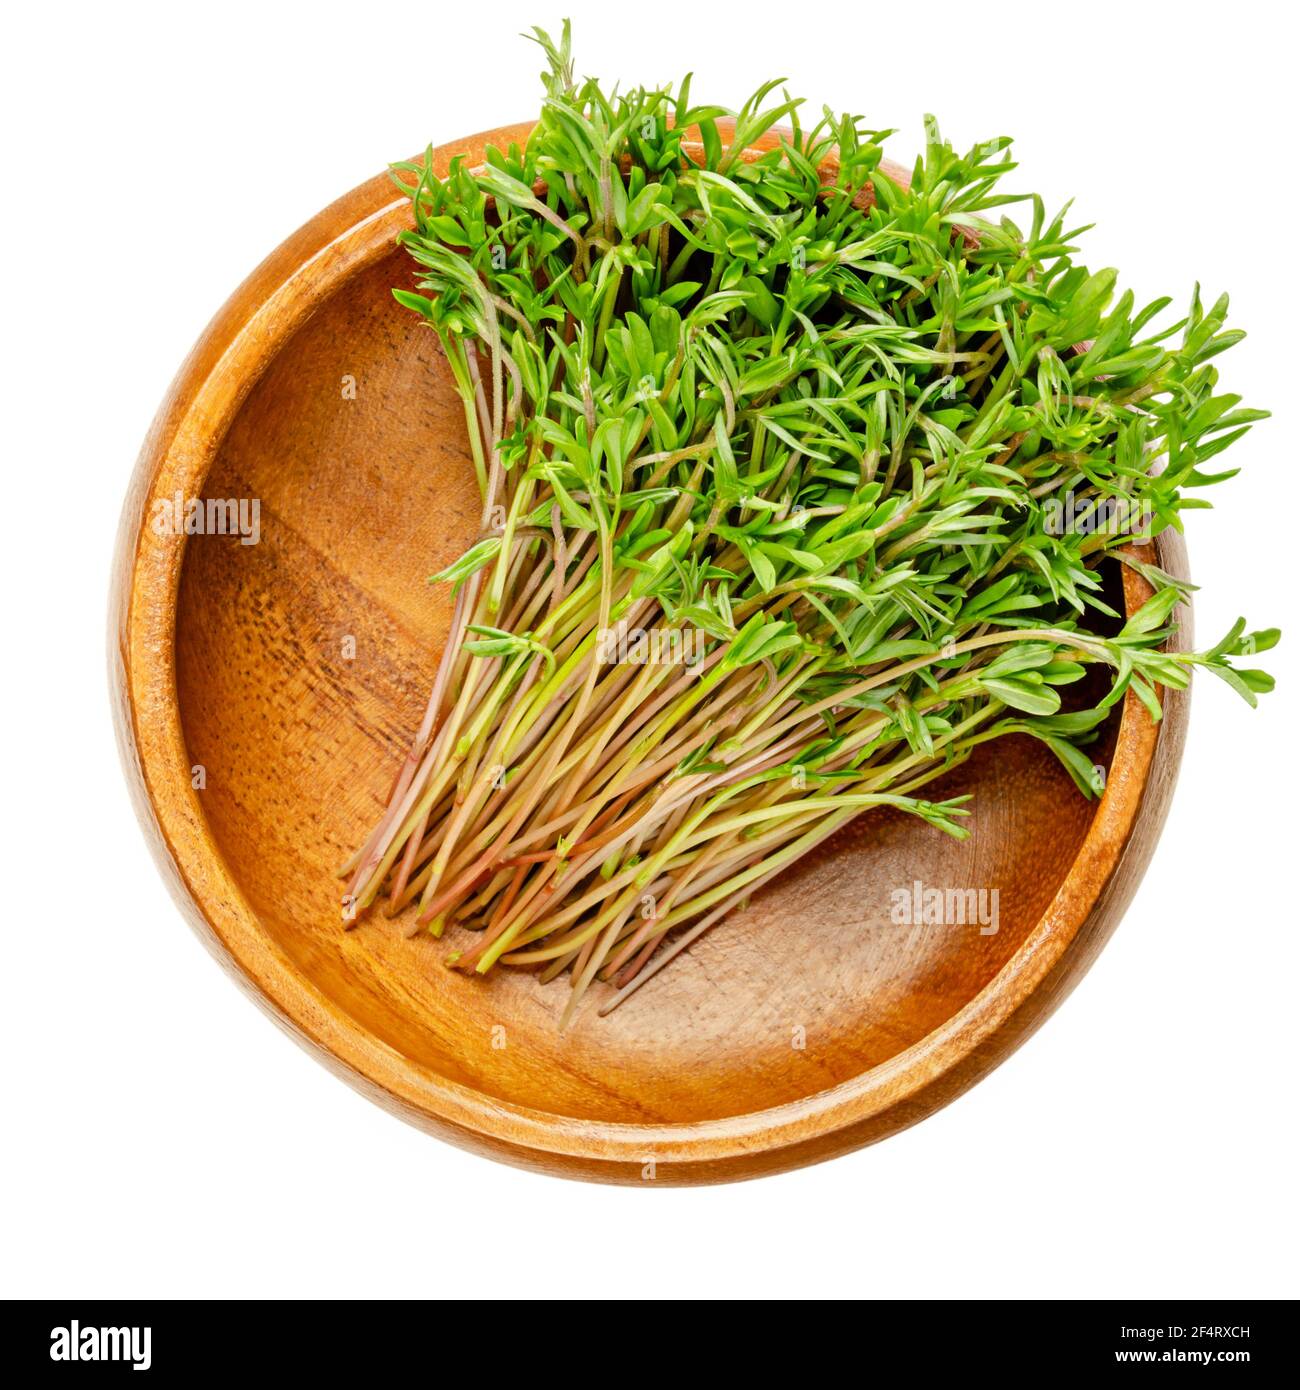 Grüne Linsen-Microgreens in einer Holzschale. Bereit zum Essen Sprossen, grüne Sämlinge, junge Pflanzen und Triebe von grünen Linsen, Lens culinaris. Stockfoto